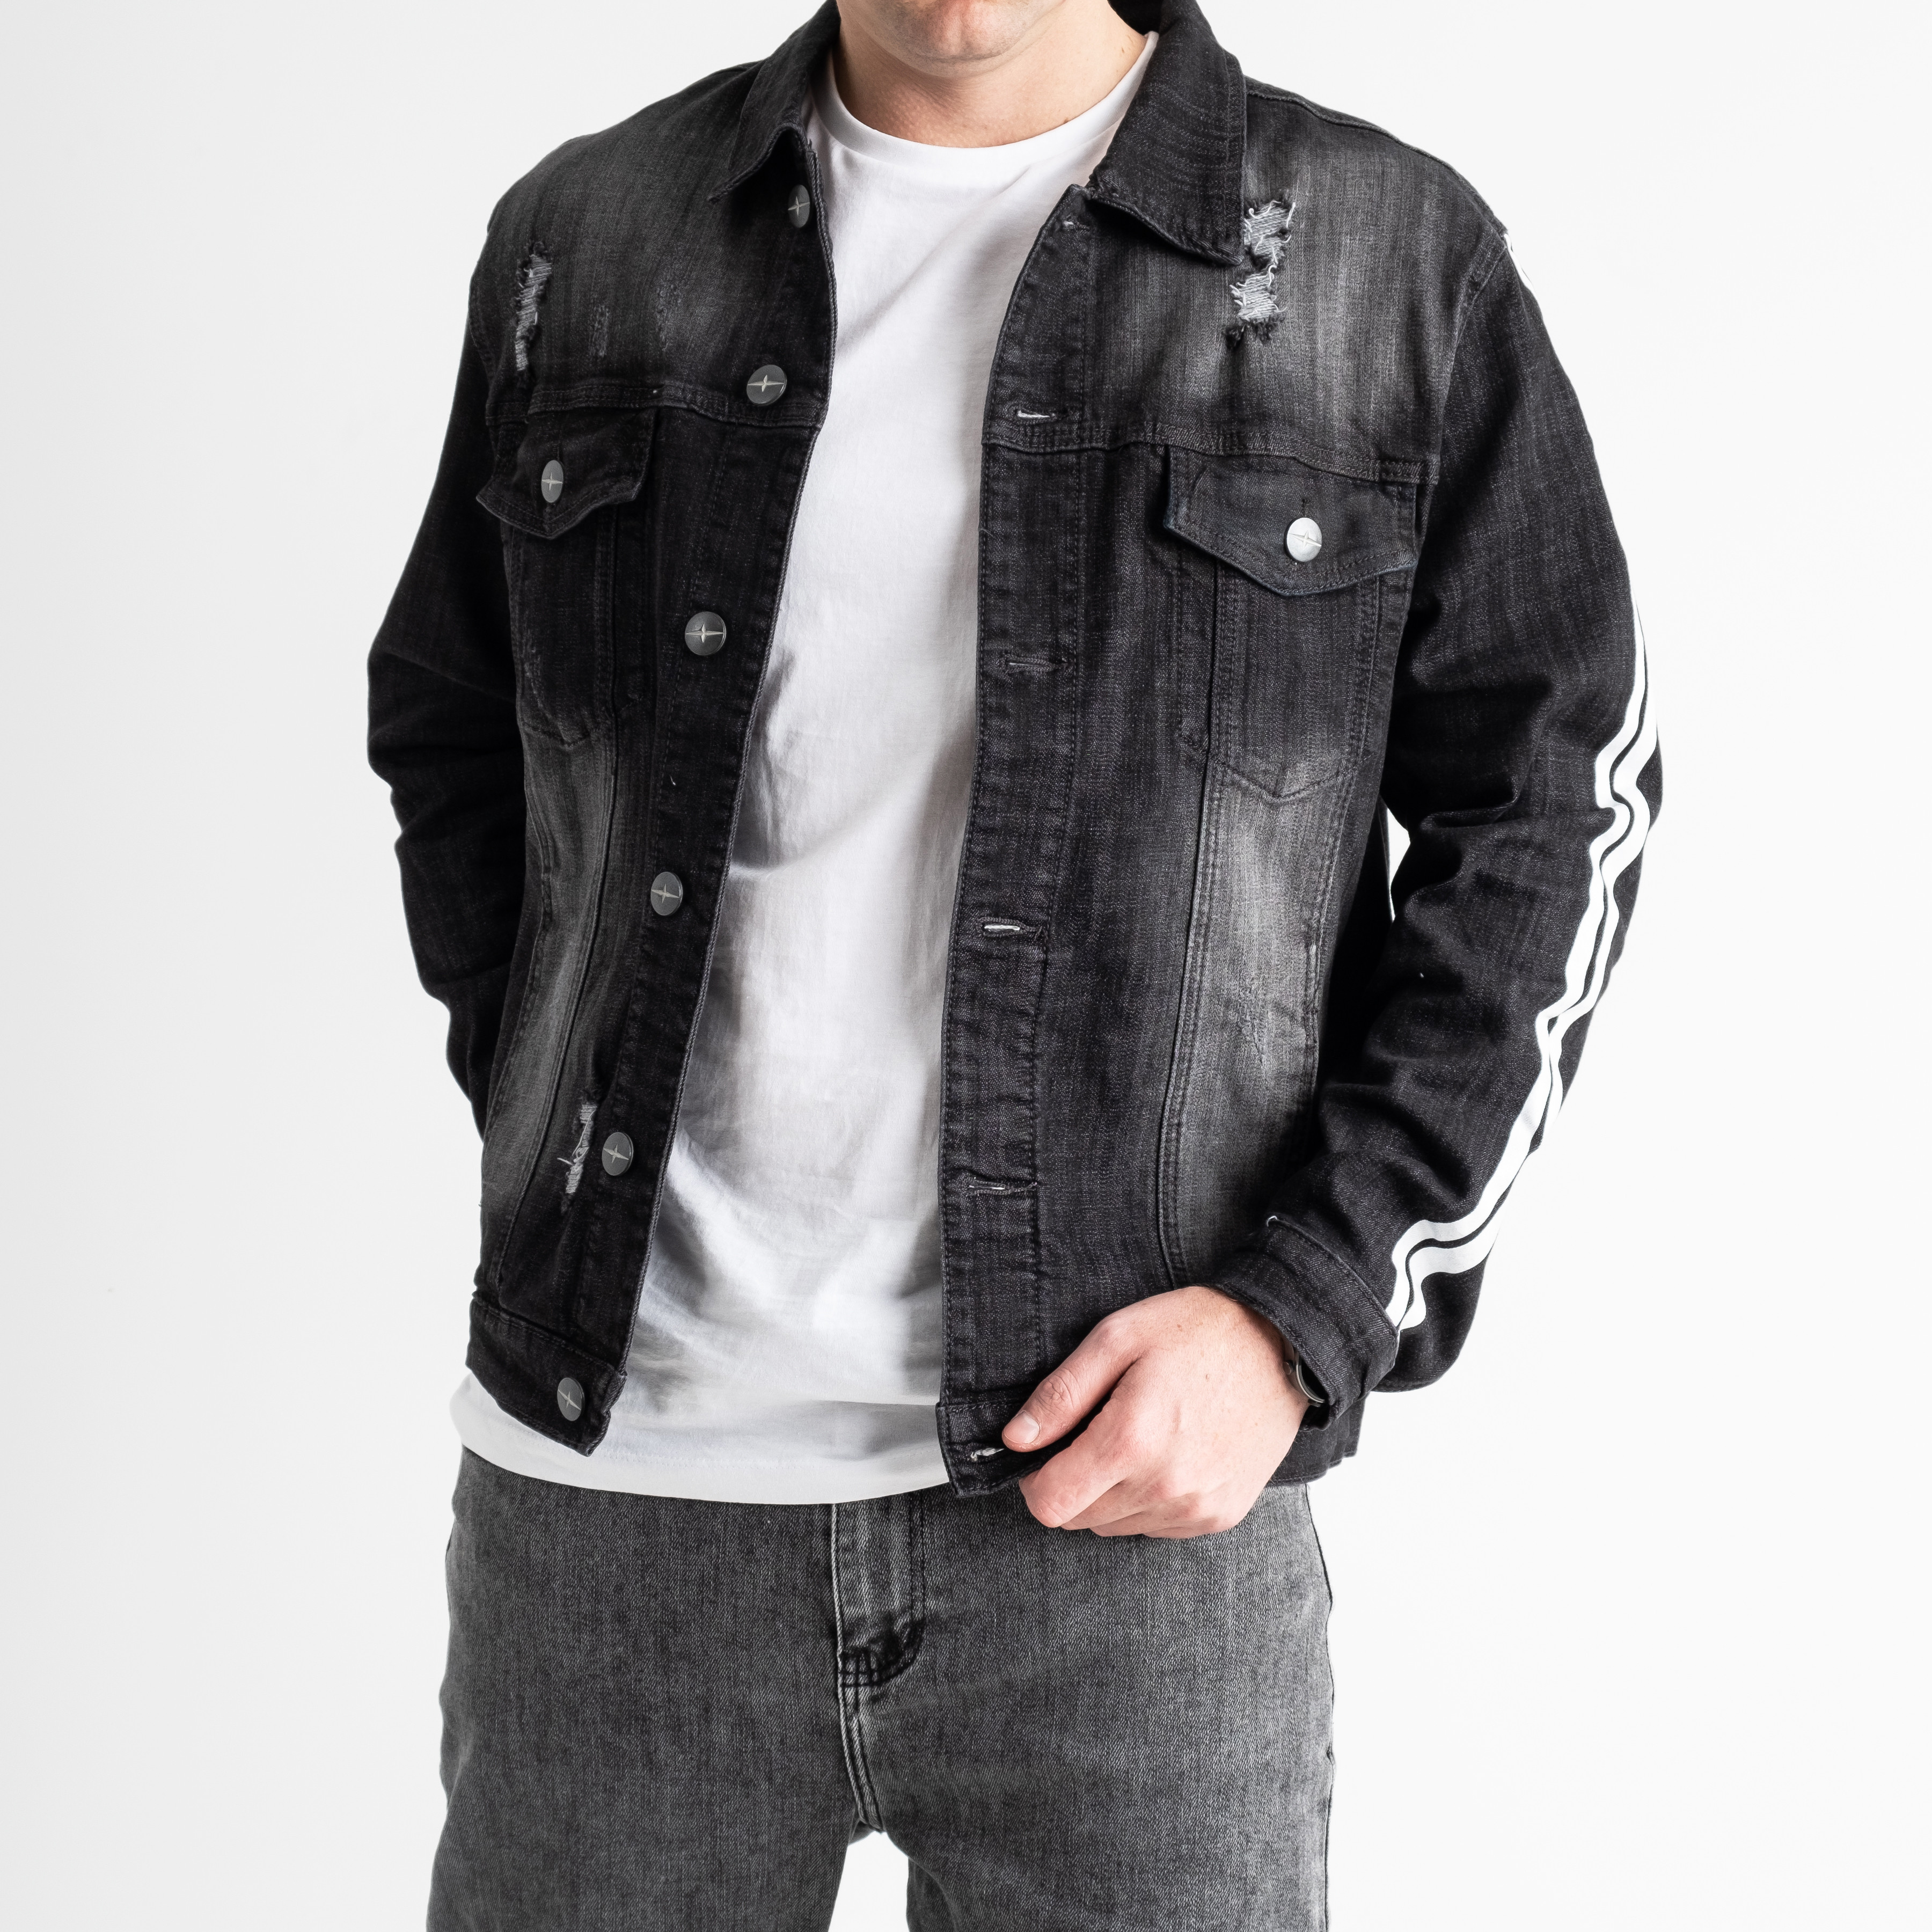 0015 Just Boy джинсовая куртка мужская серая котоновая (6 ед.размеры: M.L/2.XL/2.2XL)